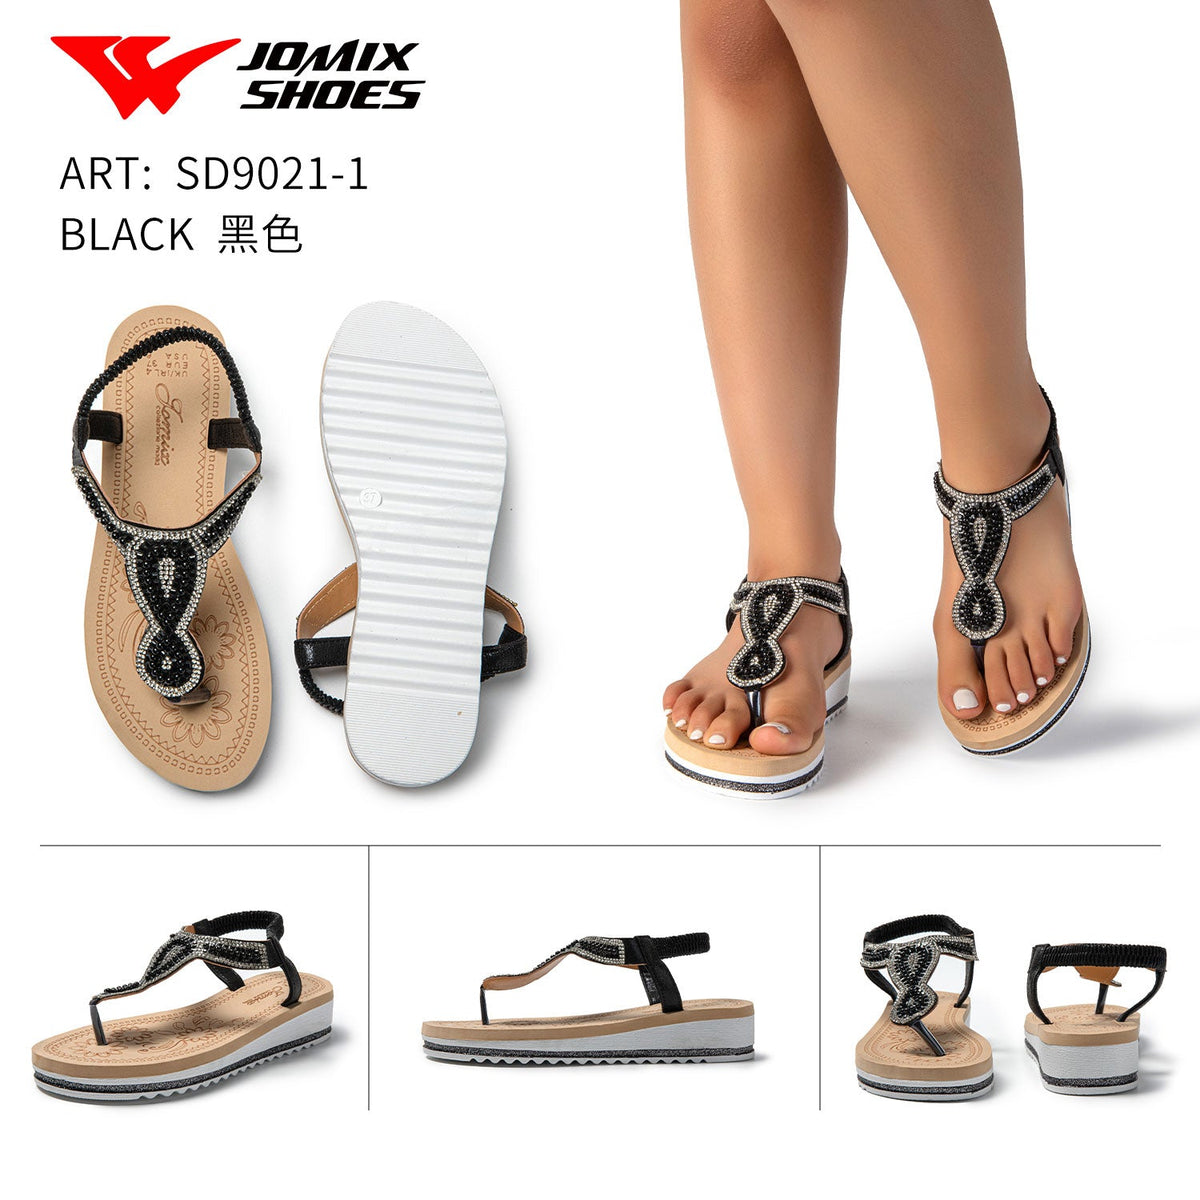 Sandali da donna Jomix Shoes Sd9021-1